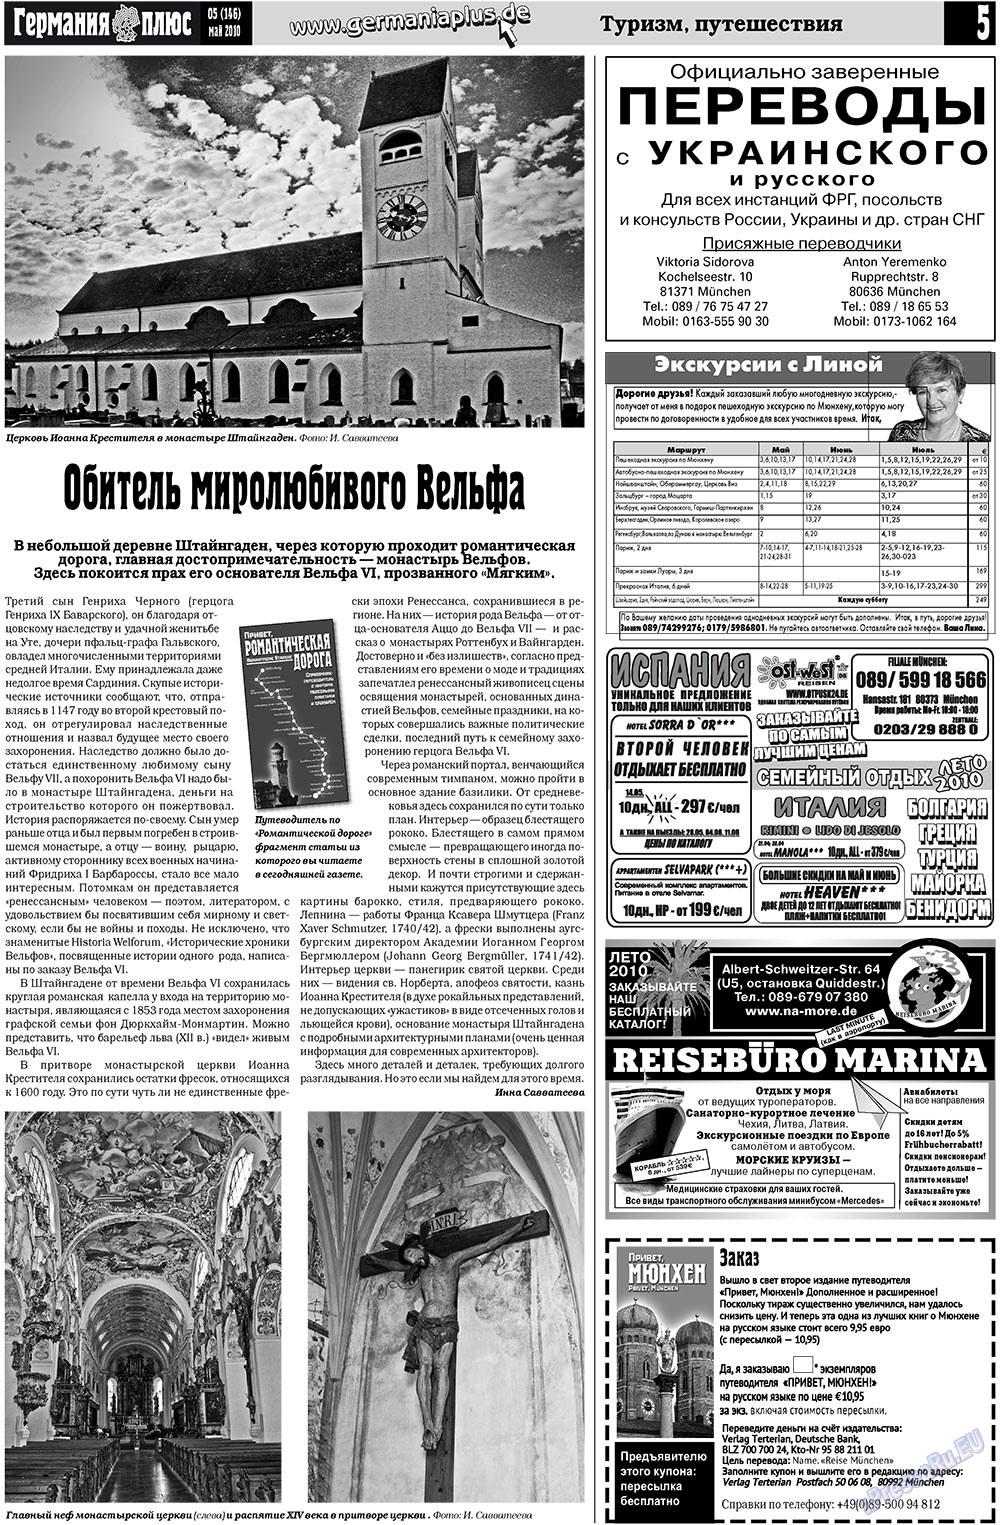 Германия плюс (газета). 2010 год, номер 5, стр. 5